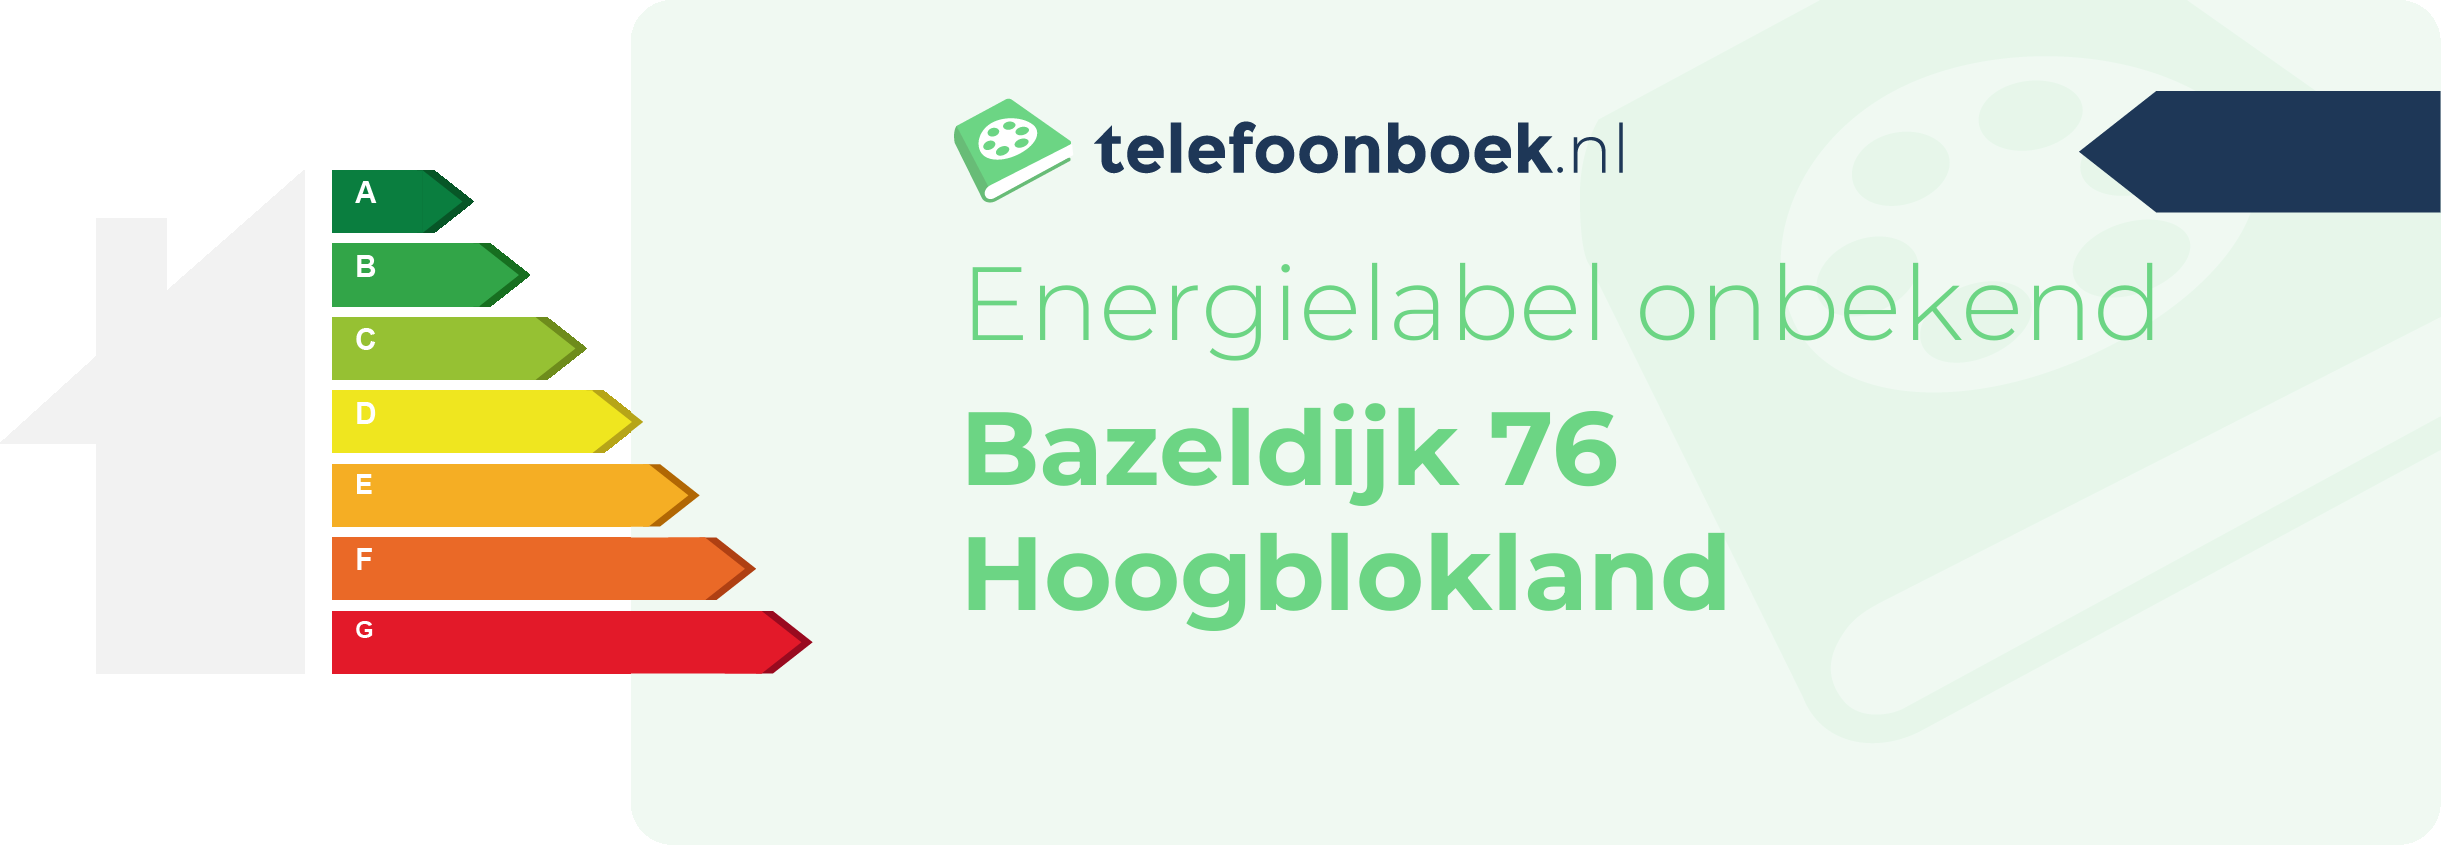 Energielabel Bazeldijk 76 Hoogblokland